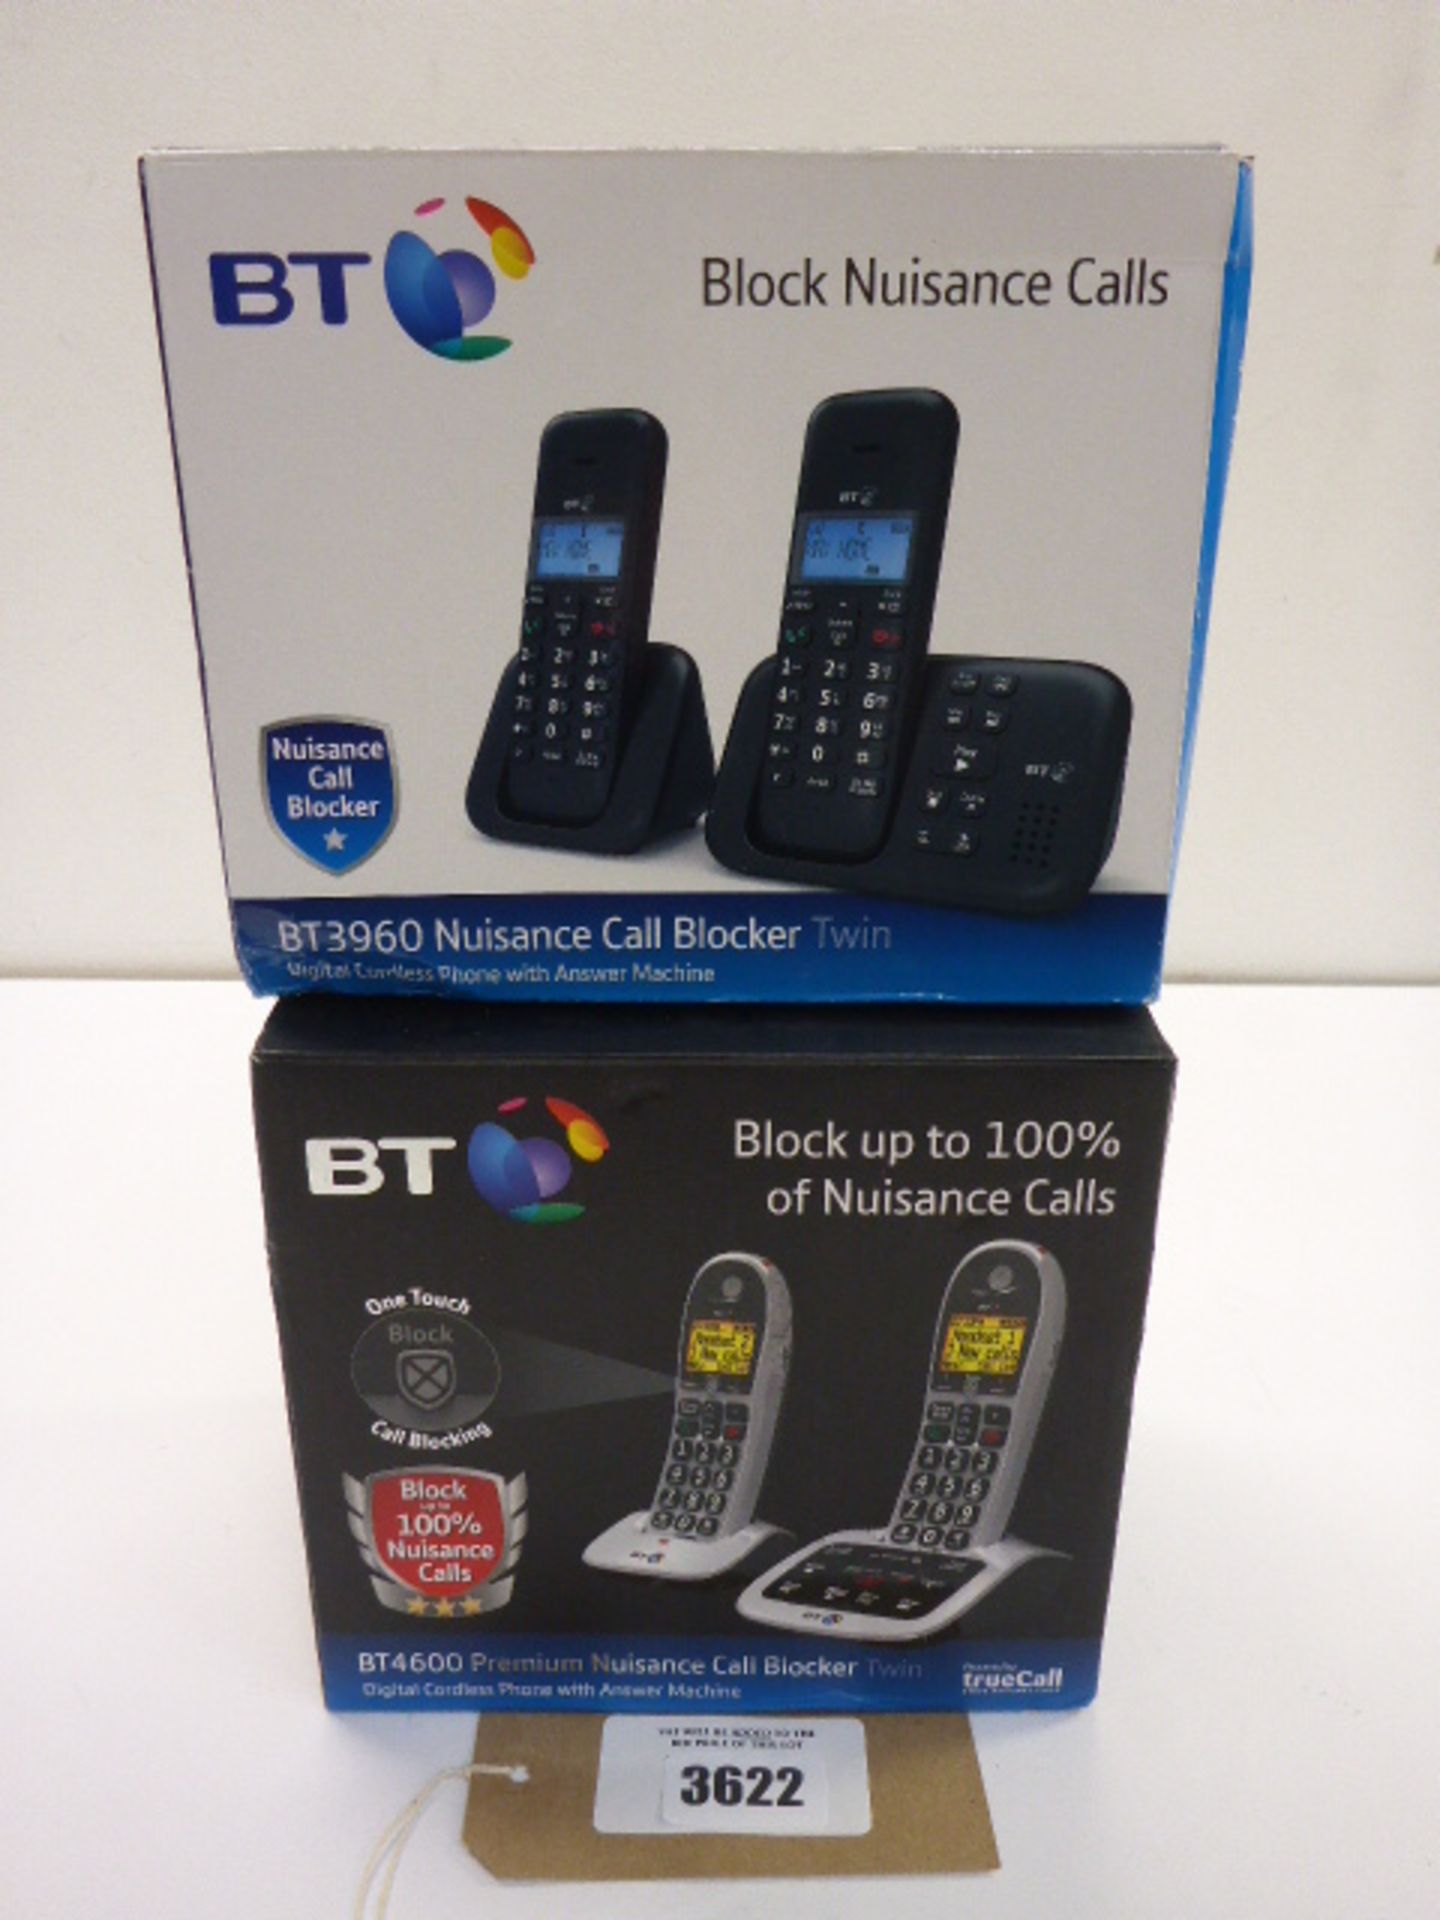 BT4600 Premium nuisance call blocker twin phone set and BT3960 Nuisance Call blocker twin phone set